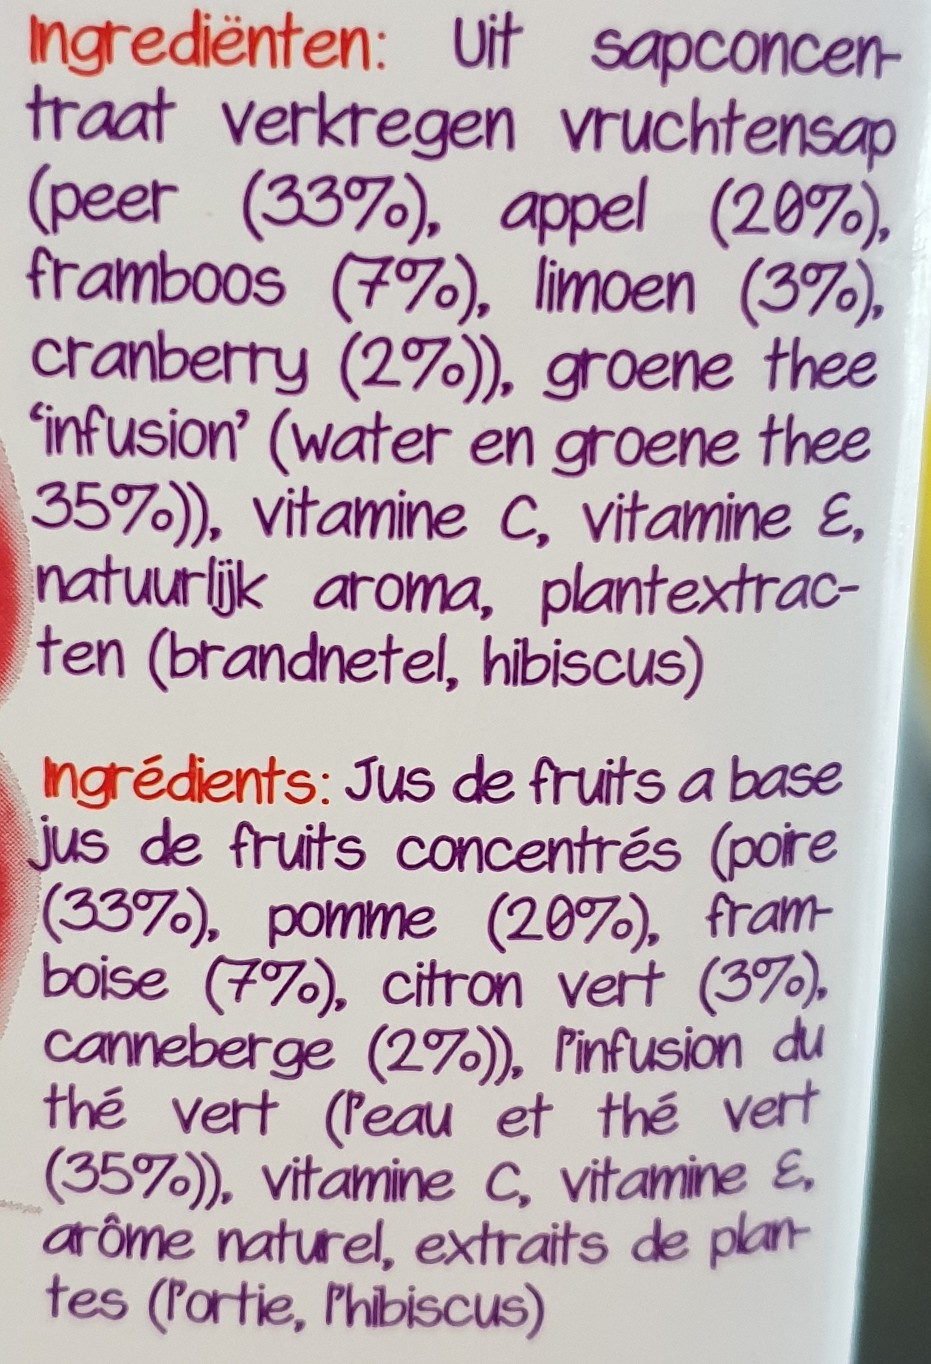 Daily Detox Framboise et thé vert - Ingrediënten - fr